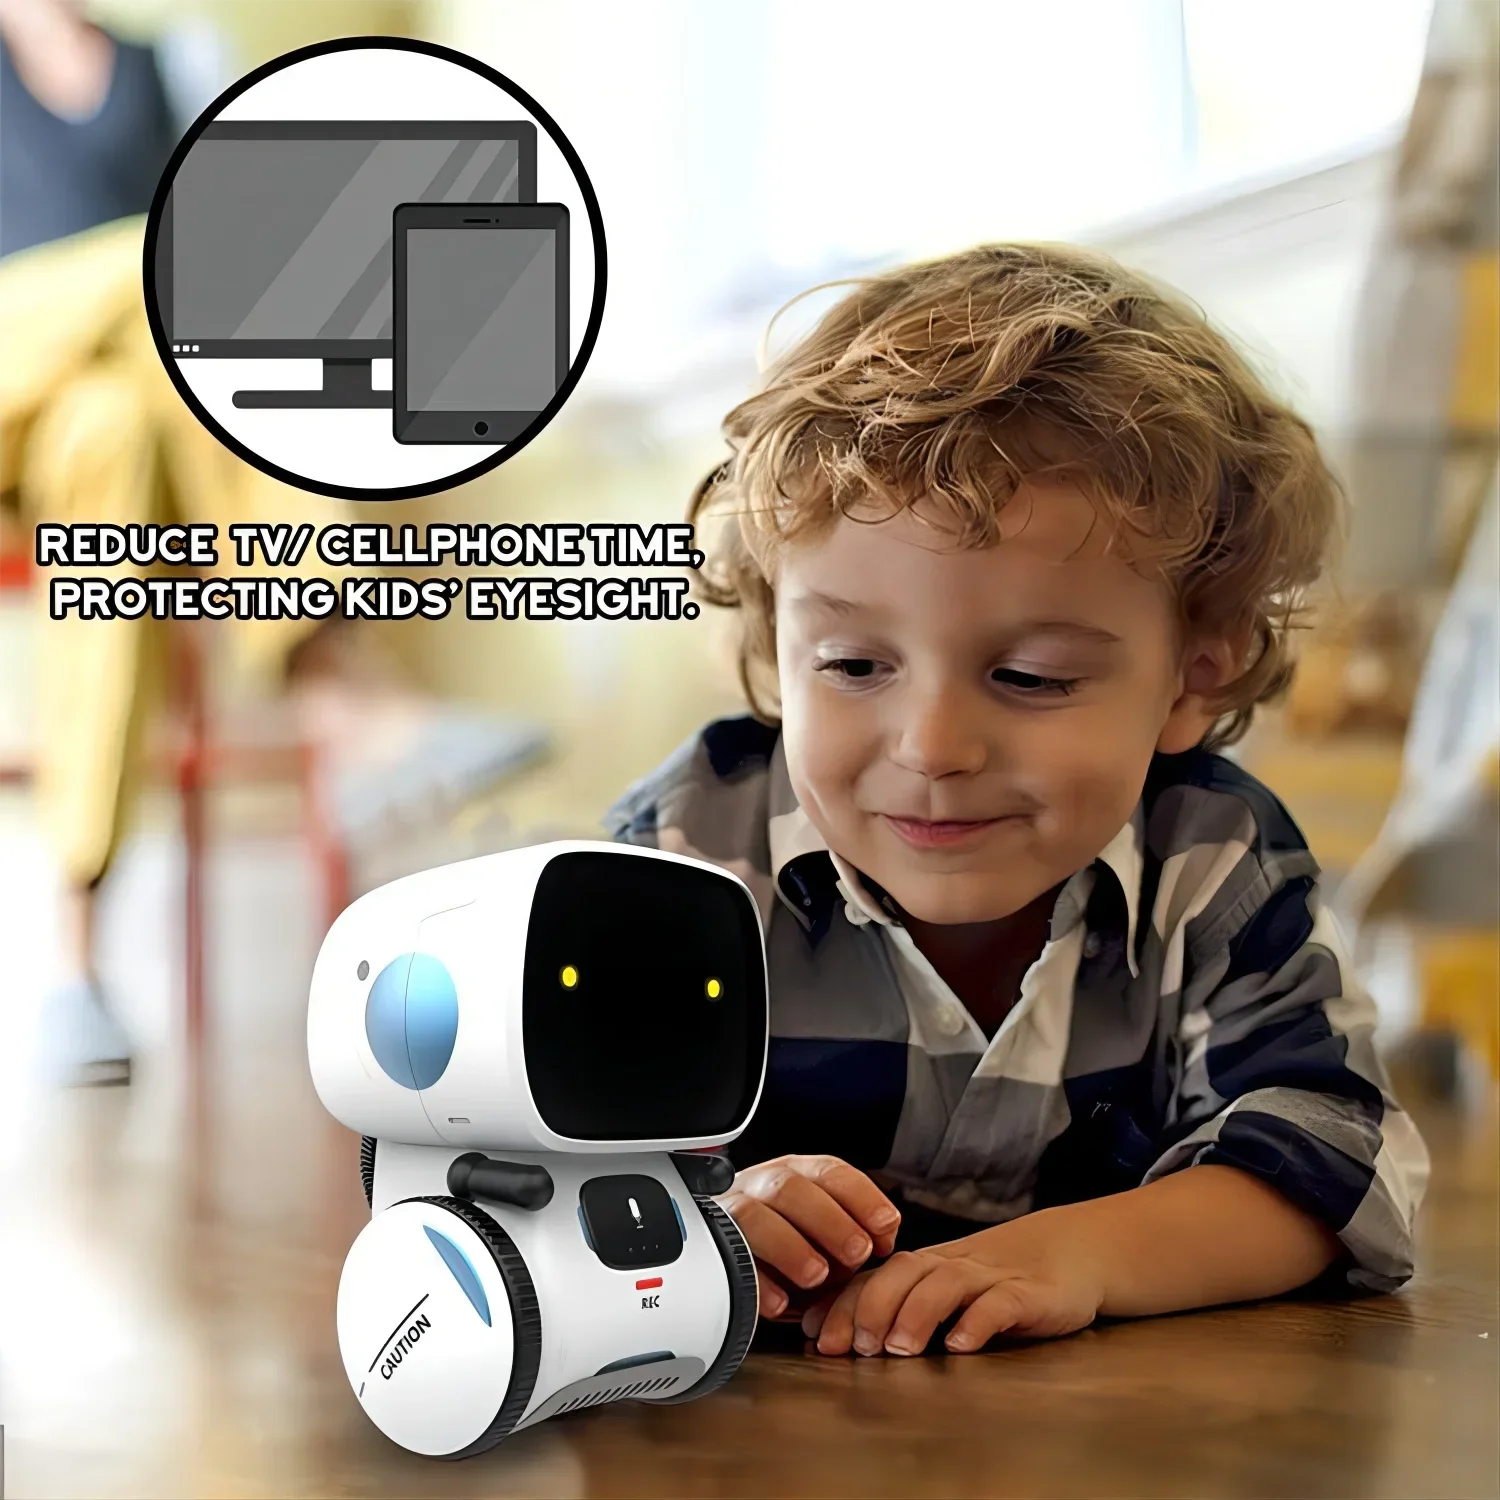 Interaktivní hračka dar nejnovější typ chytrá roboti 3 jazycích versions dotek ovládání  pro děti chytrý tanec hlas příkaz